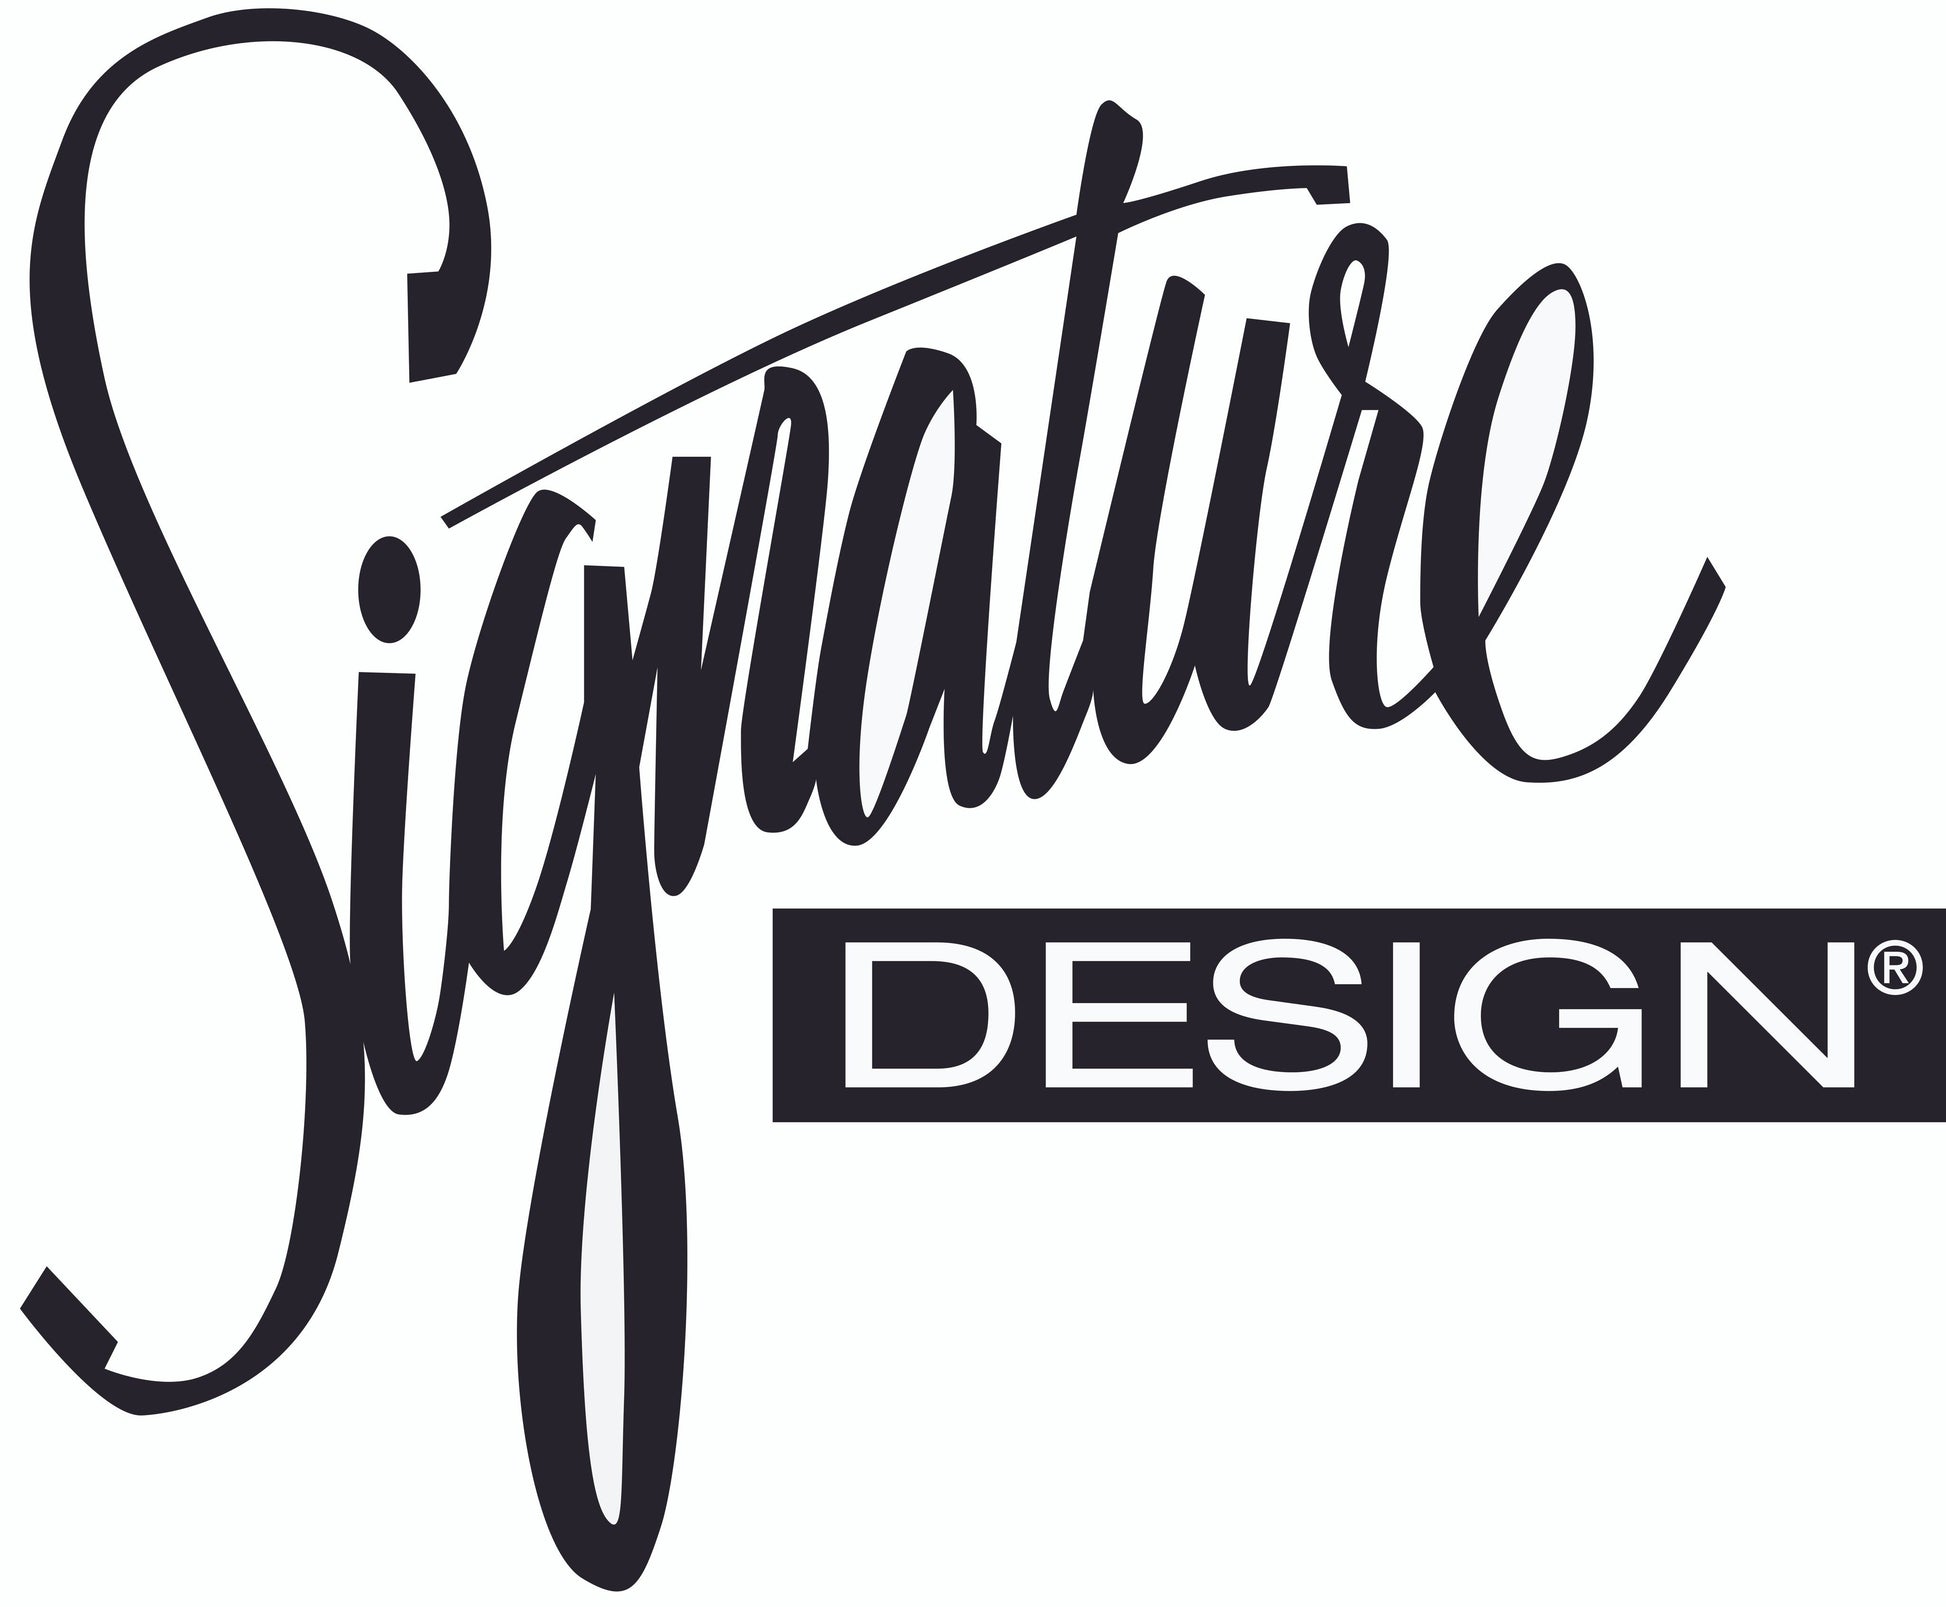 Kaywood Loveseat Signature Design by Ashley®